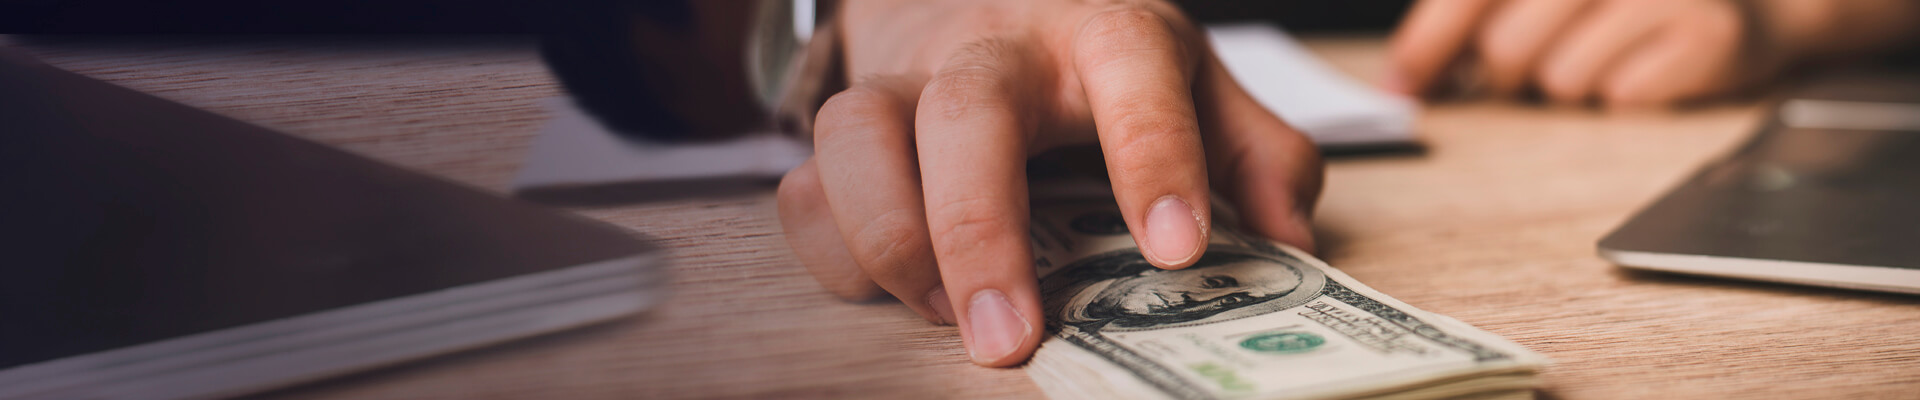 Sobre un escritorio una mano muestra un fajo de dólares. En el Banco sí cuenta con productos para realizar transacciones en moneda extranjera